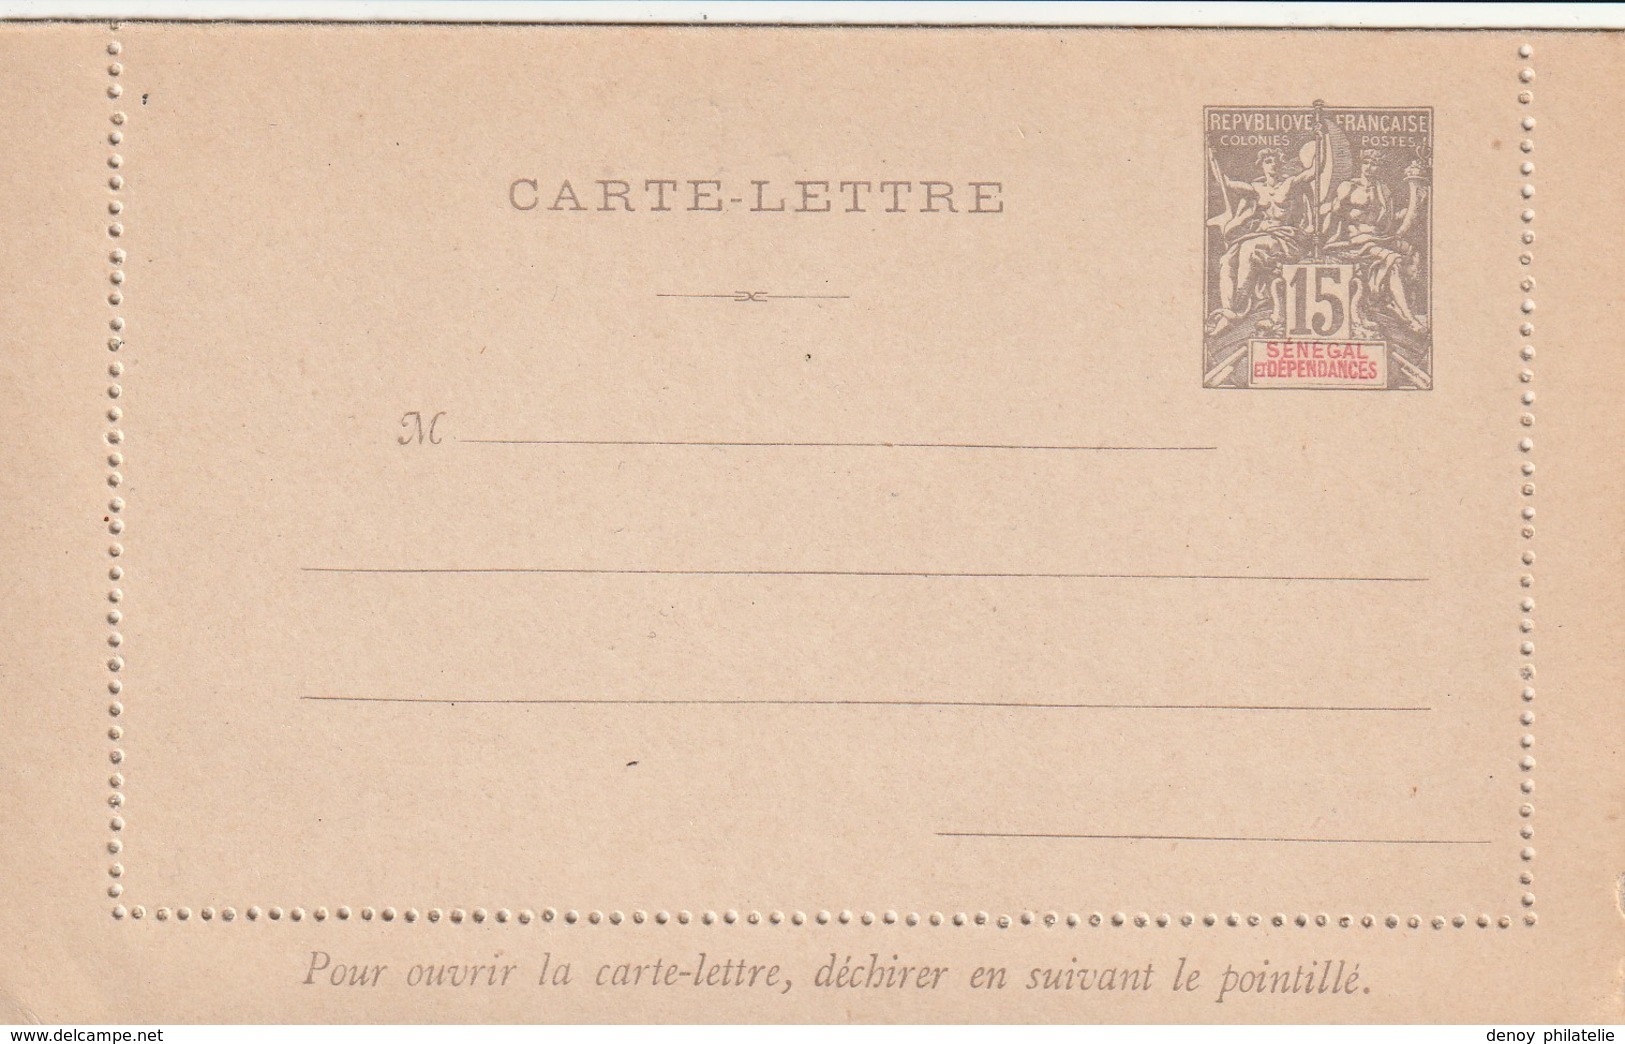 Sénégal Entier Postal - Carte Lettre   Neuf Ref  CL 3 Acep Cote Année 2000 - Covers & Documents